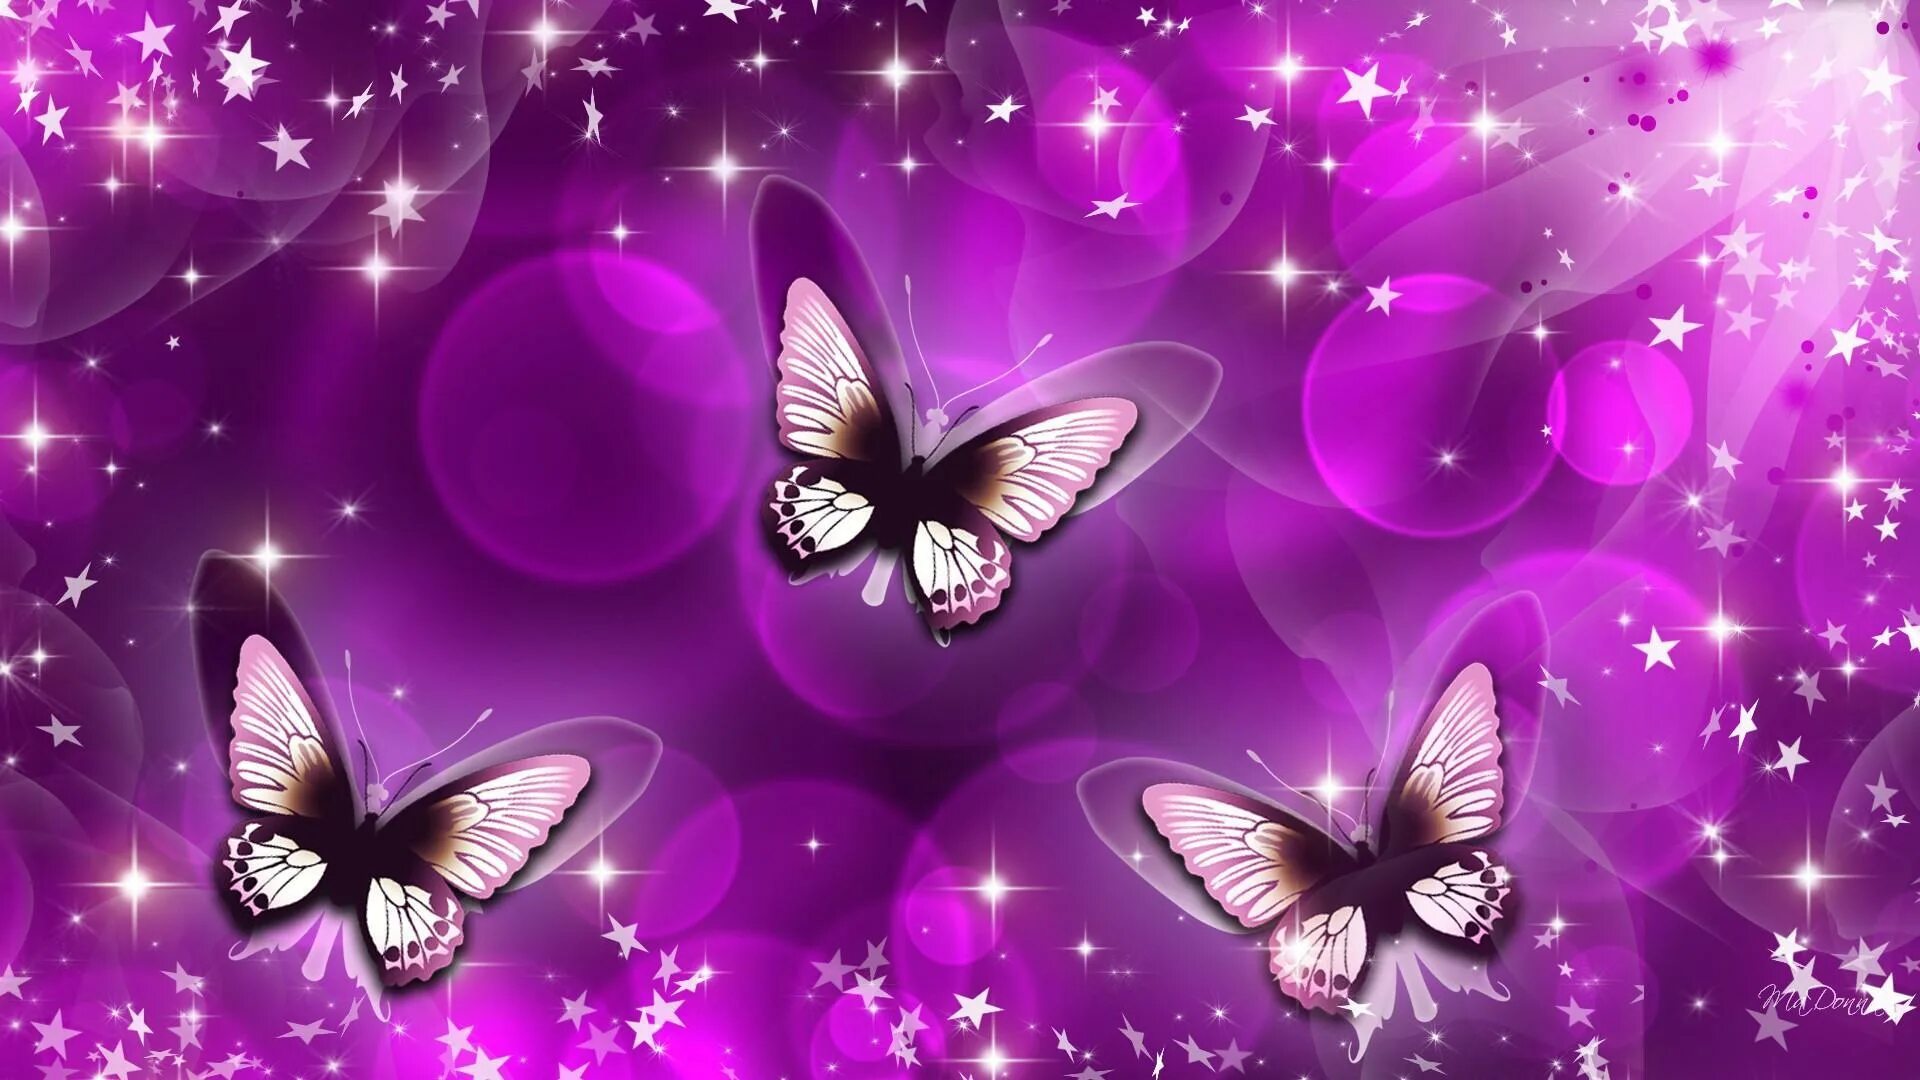 Бесплатные картинки на заставку телефона. Фон бабочки. Заставка бабочки. Обои с бабочками. Фон для рабочего стола бабочки.